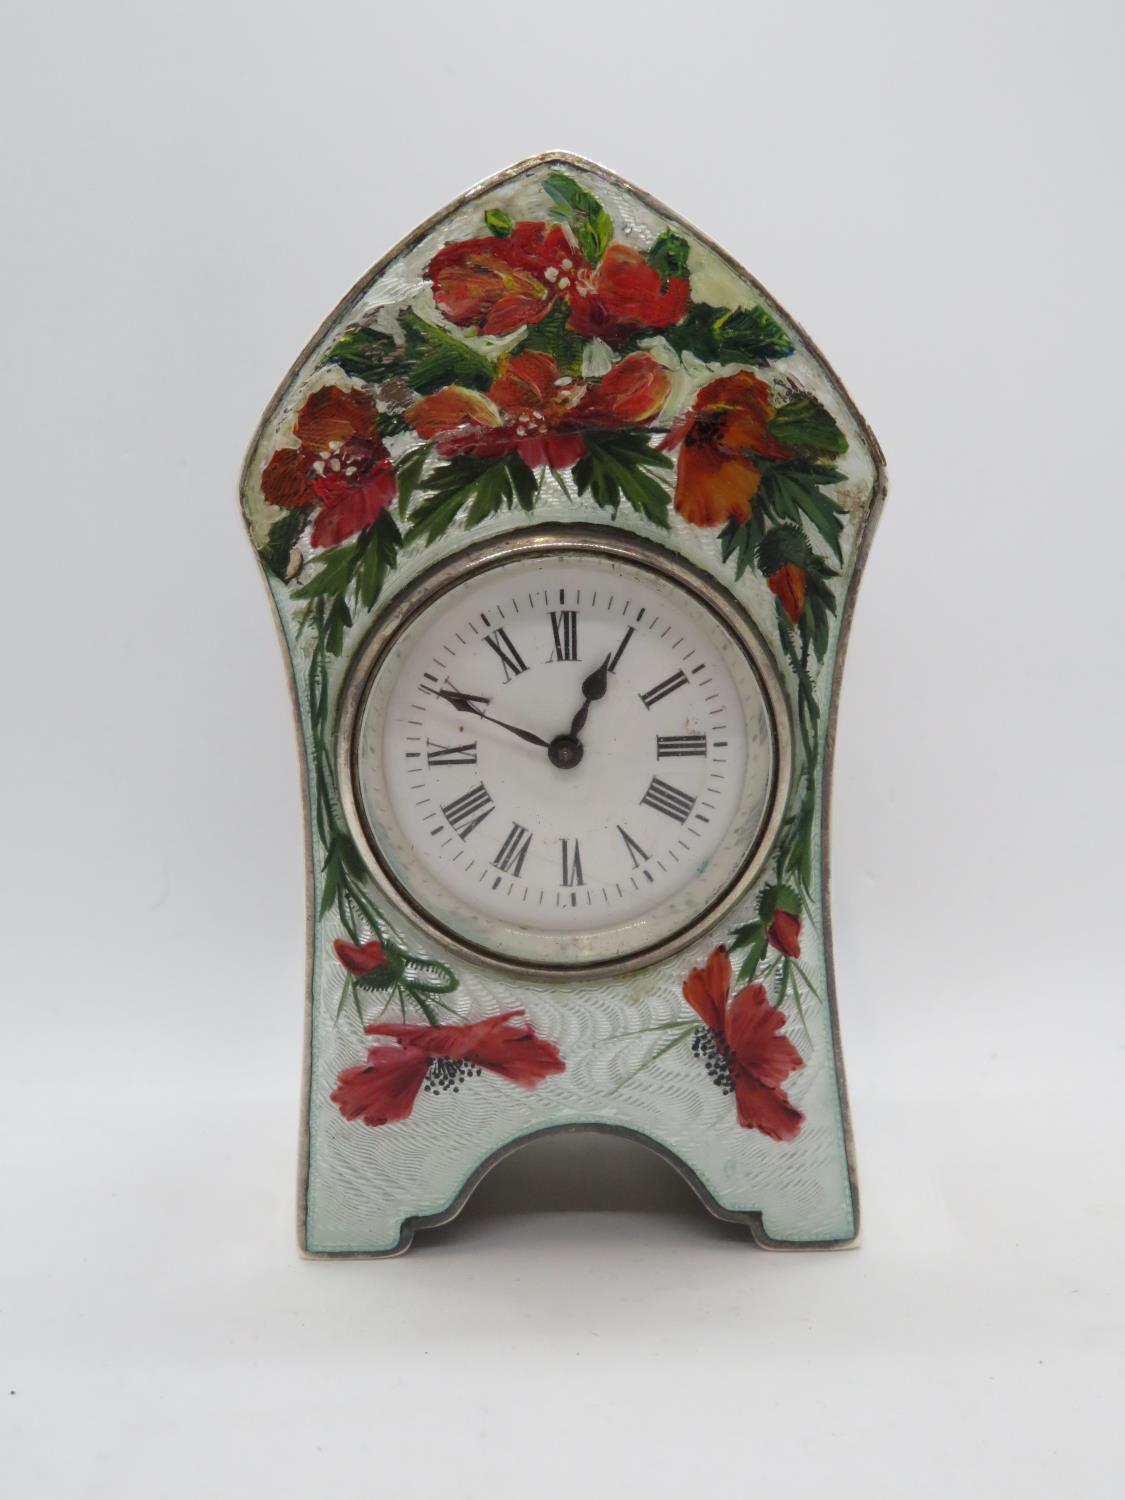 Birmingham 1905 silver enamelled clock - enamel damaged by bad repair